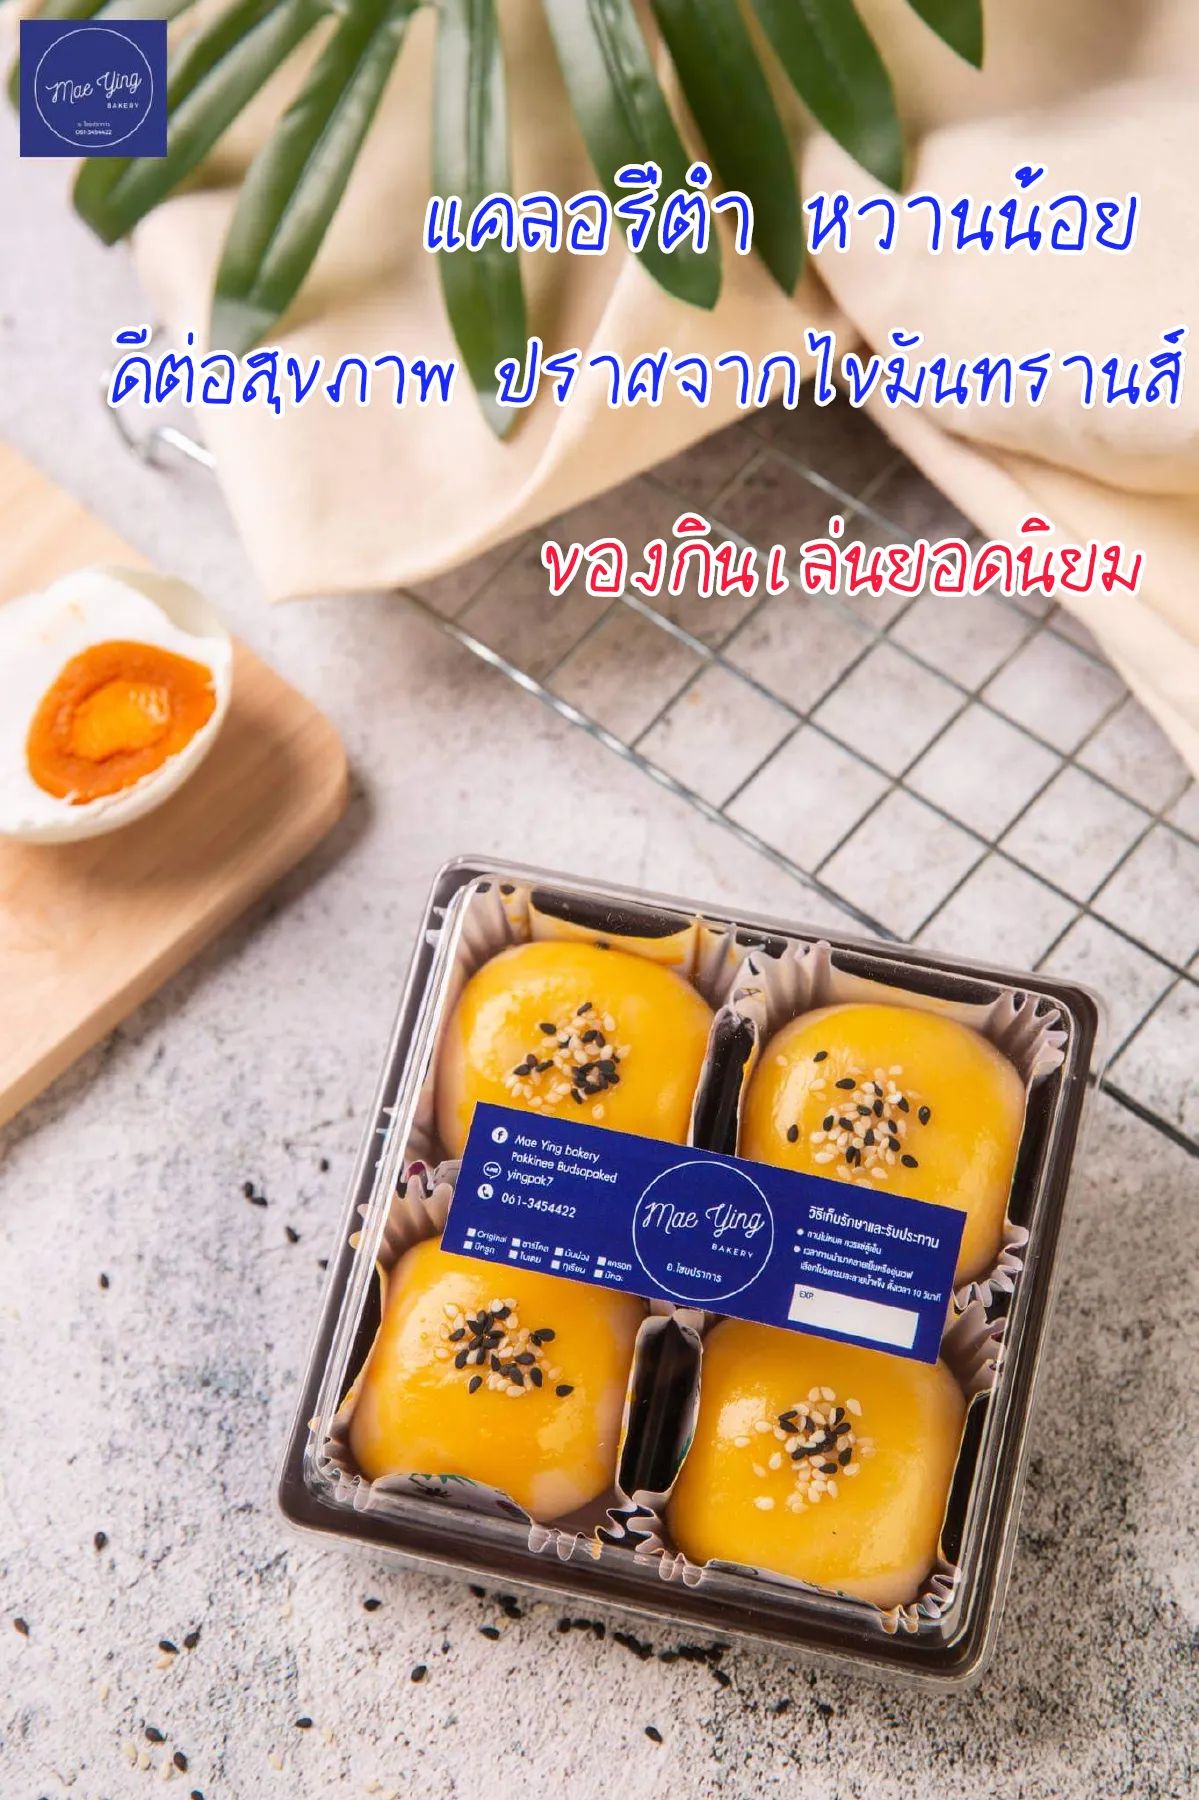 เปี๊ยะไข่เค็มลาวา4ชิ้น  by Mae Ying bakery  สูตรชาววังอบควันเทียน แป้งบาง ไข่เค็มลาวาแน่นๆเน้นๆ หอม อร่อย #พร้อมส่ง 100%natural Healthy